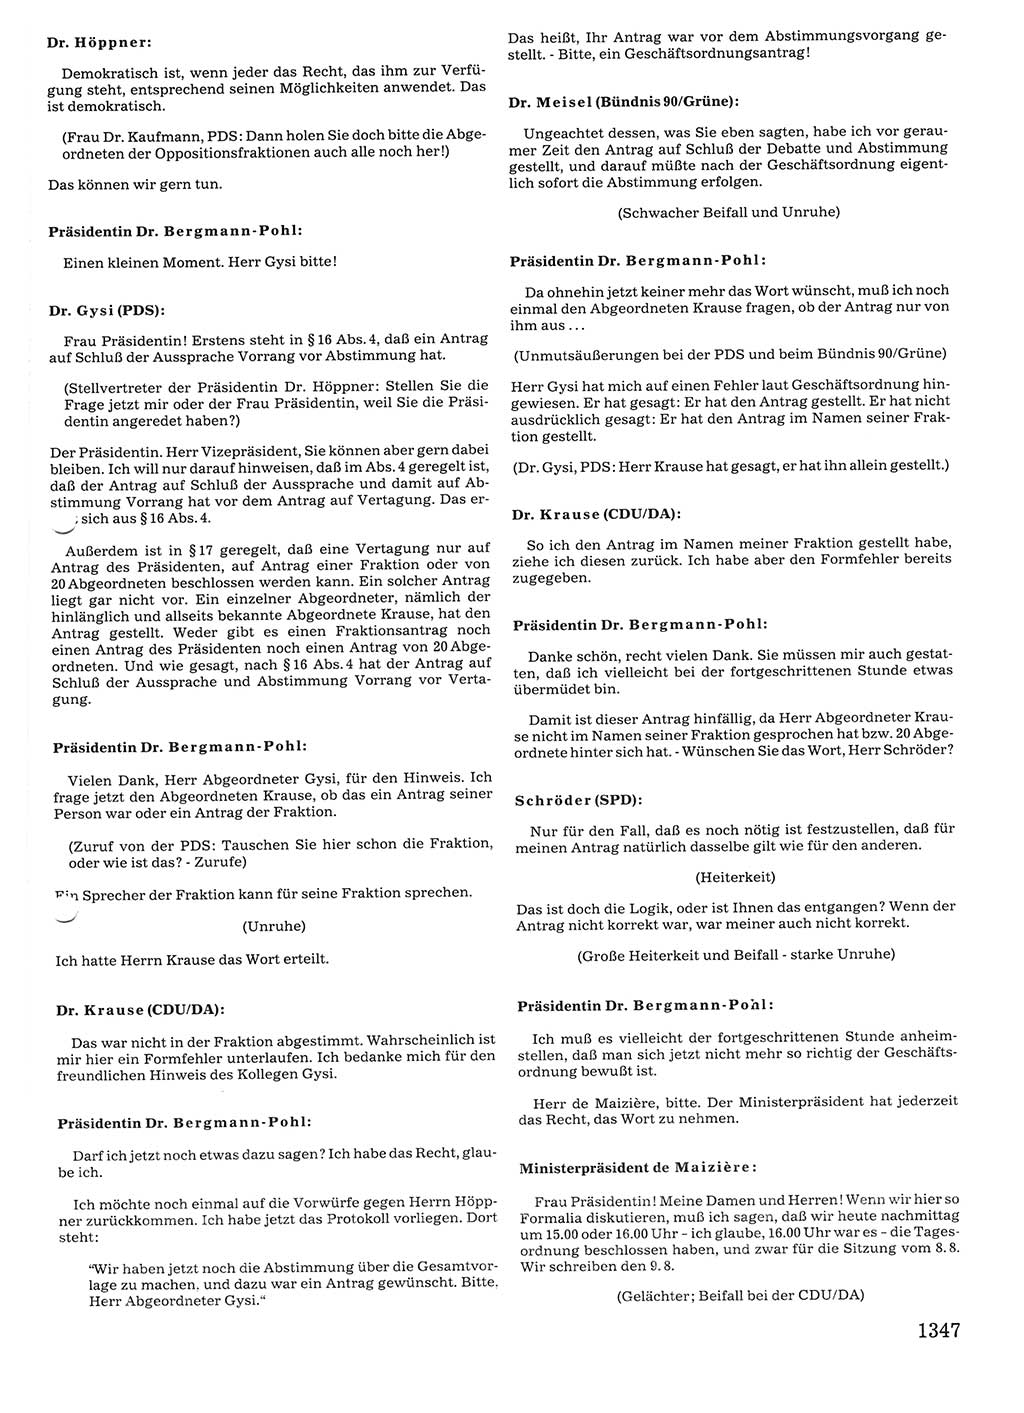 Tagungen der Volkskammer (VK) der Deutschen Demokratischen Republik (DDR), 10. Wahlperiode 1990, Seite 1347 (VK. DDR 10. WP. 1990, Prot. Tg. 1-38, 5.4.-2.10.1990, S. 1347)